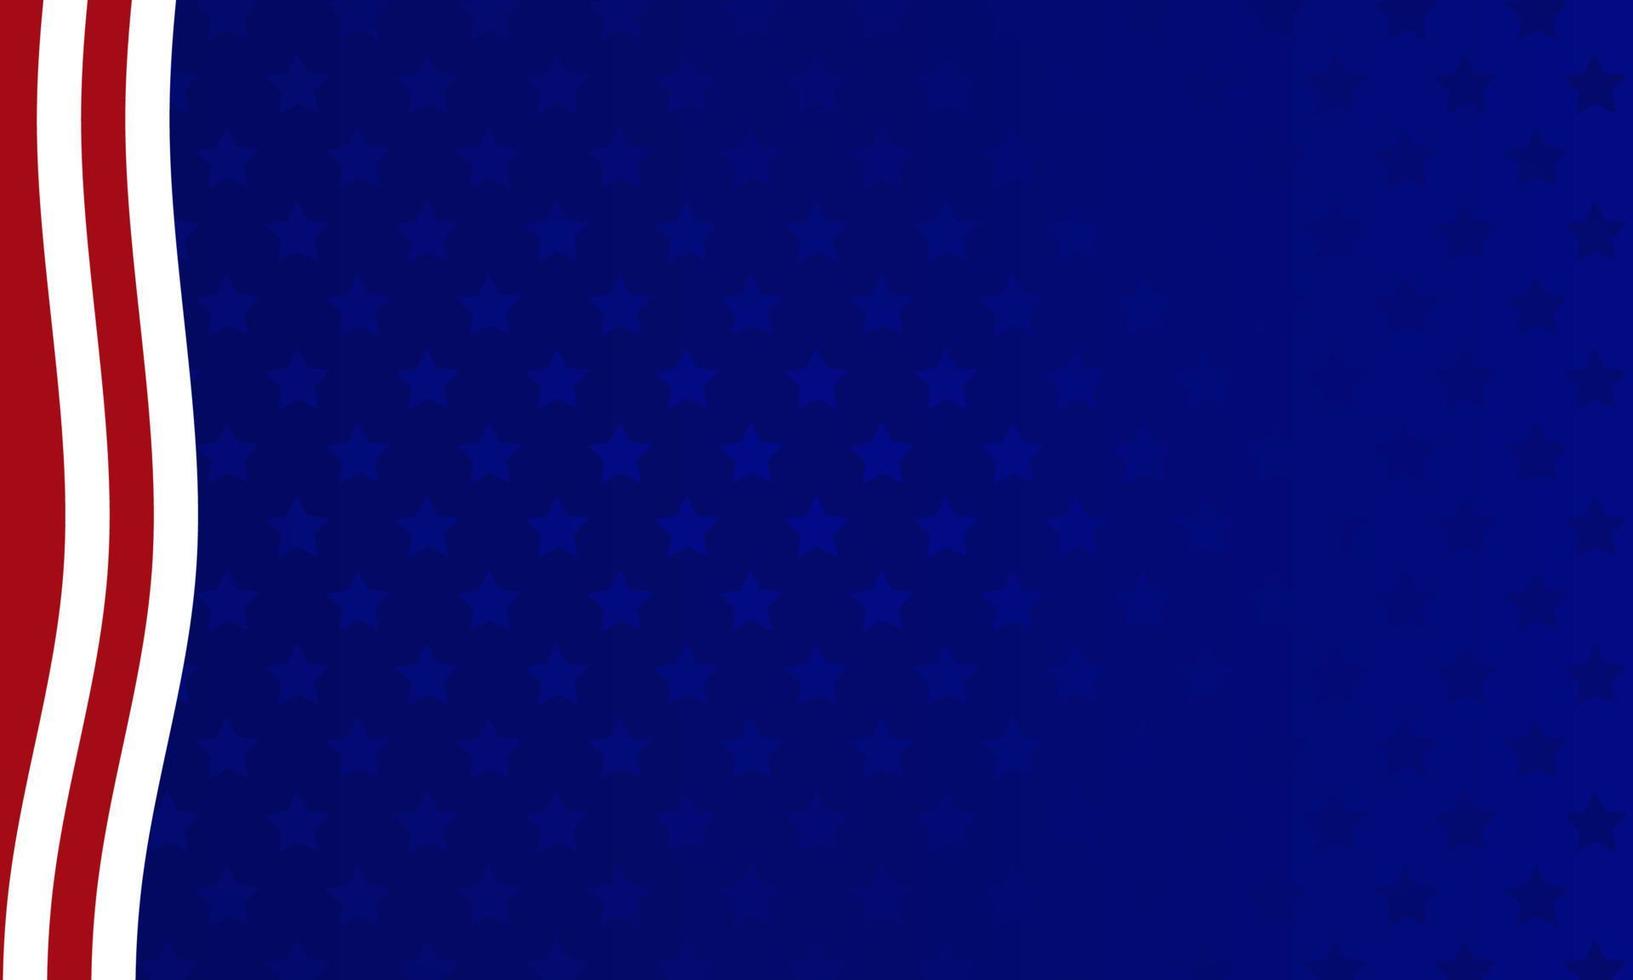 abstracte achtergrond met elementen van de Amerikaanse vlag in rode en blauwe kleuren vector